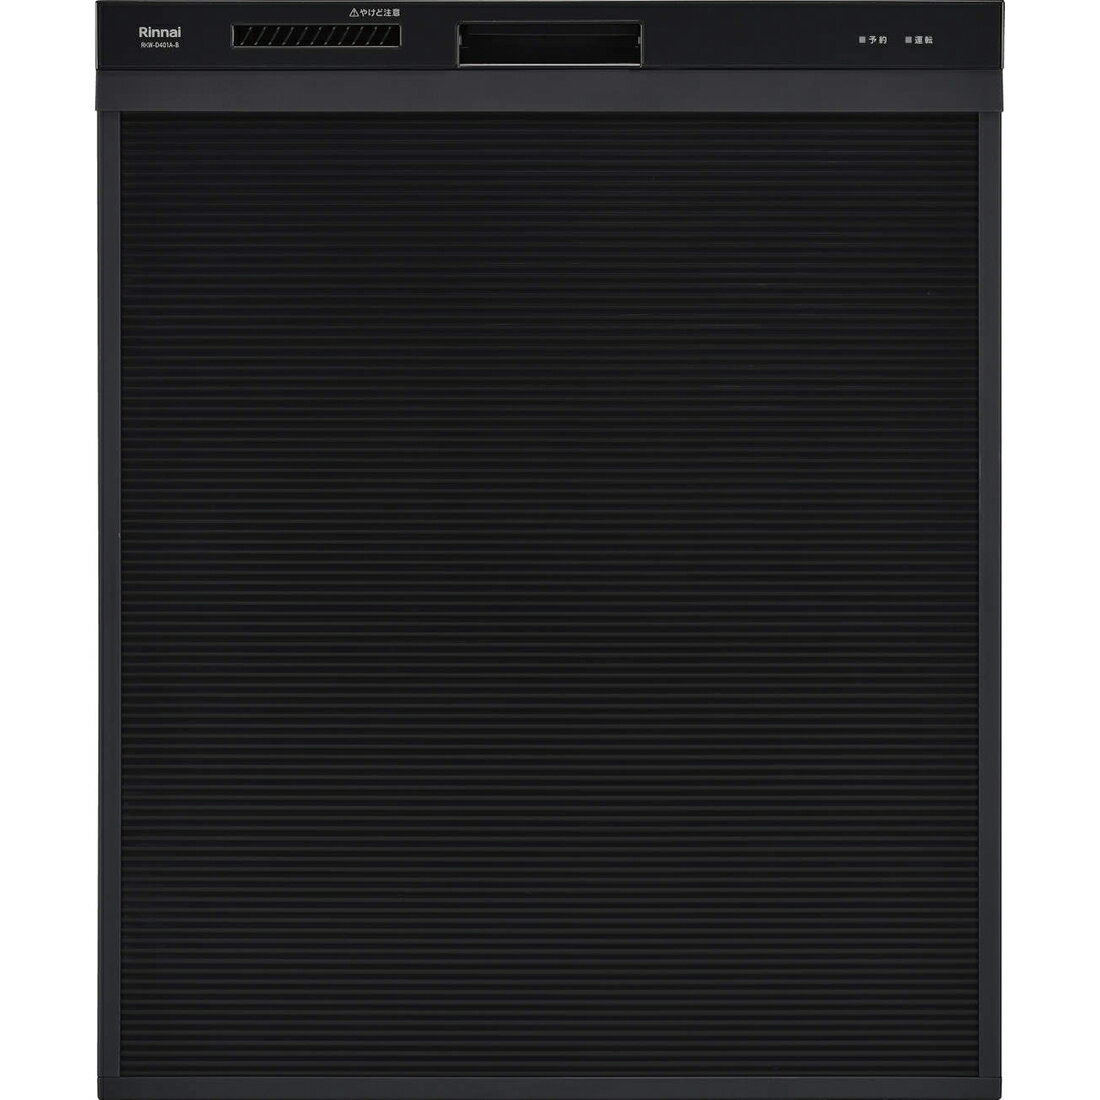 ####▽リンナイ 食器洗い乾燥機【RSW-SD401A-B】ブラック 自立脚付きタイプ 深型スライドオープン ぎっしりカゴタイプ 幅45cm スタンダード